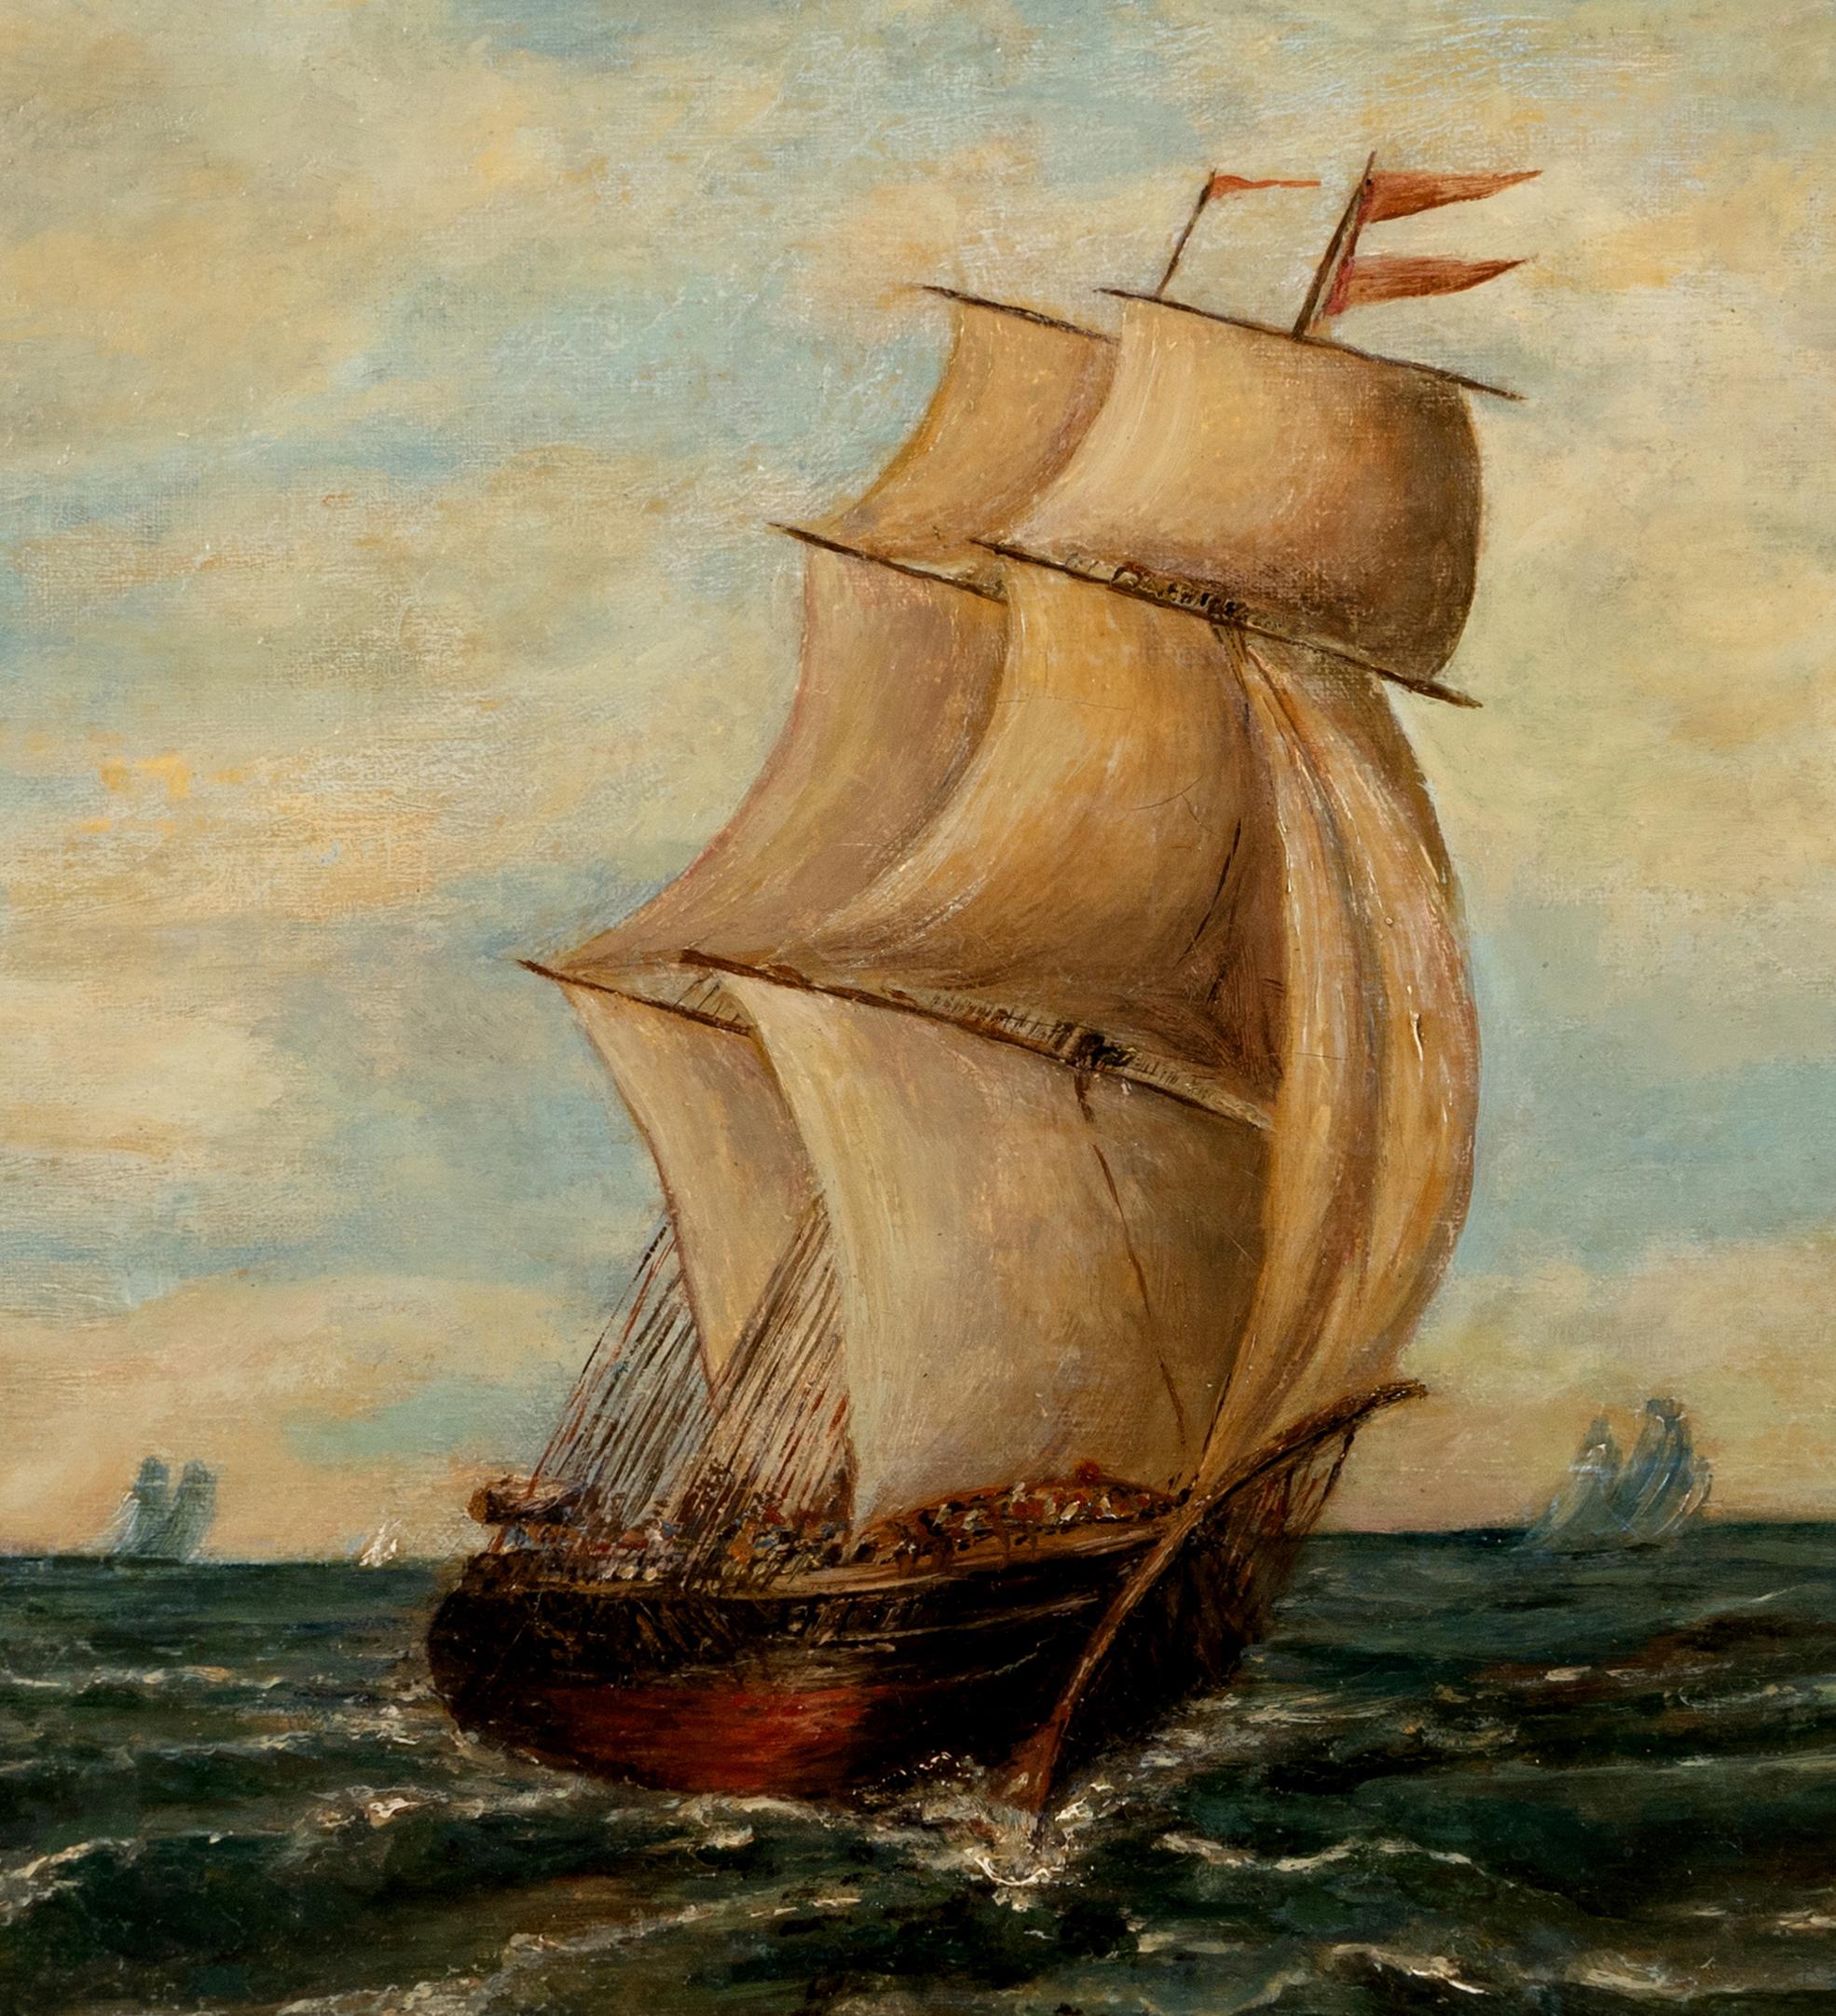 Peinture à l'huile sur lin d'un navire à voile historique, par Inconnu - Painting de Unknown